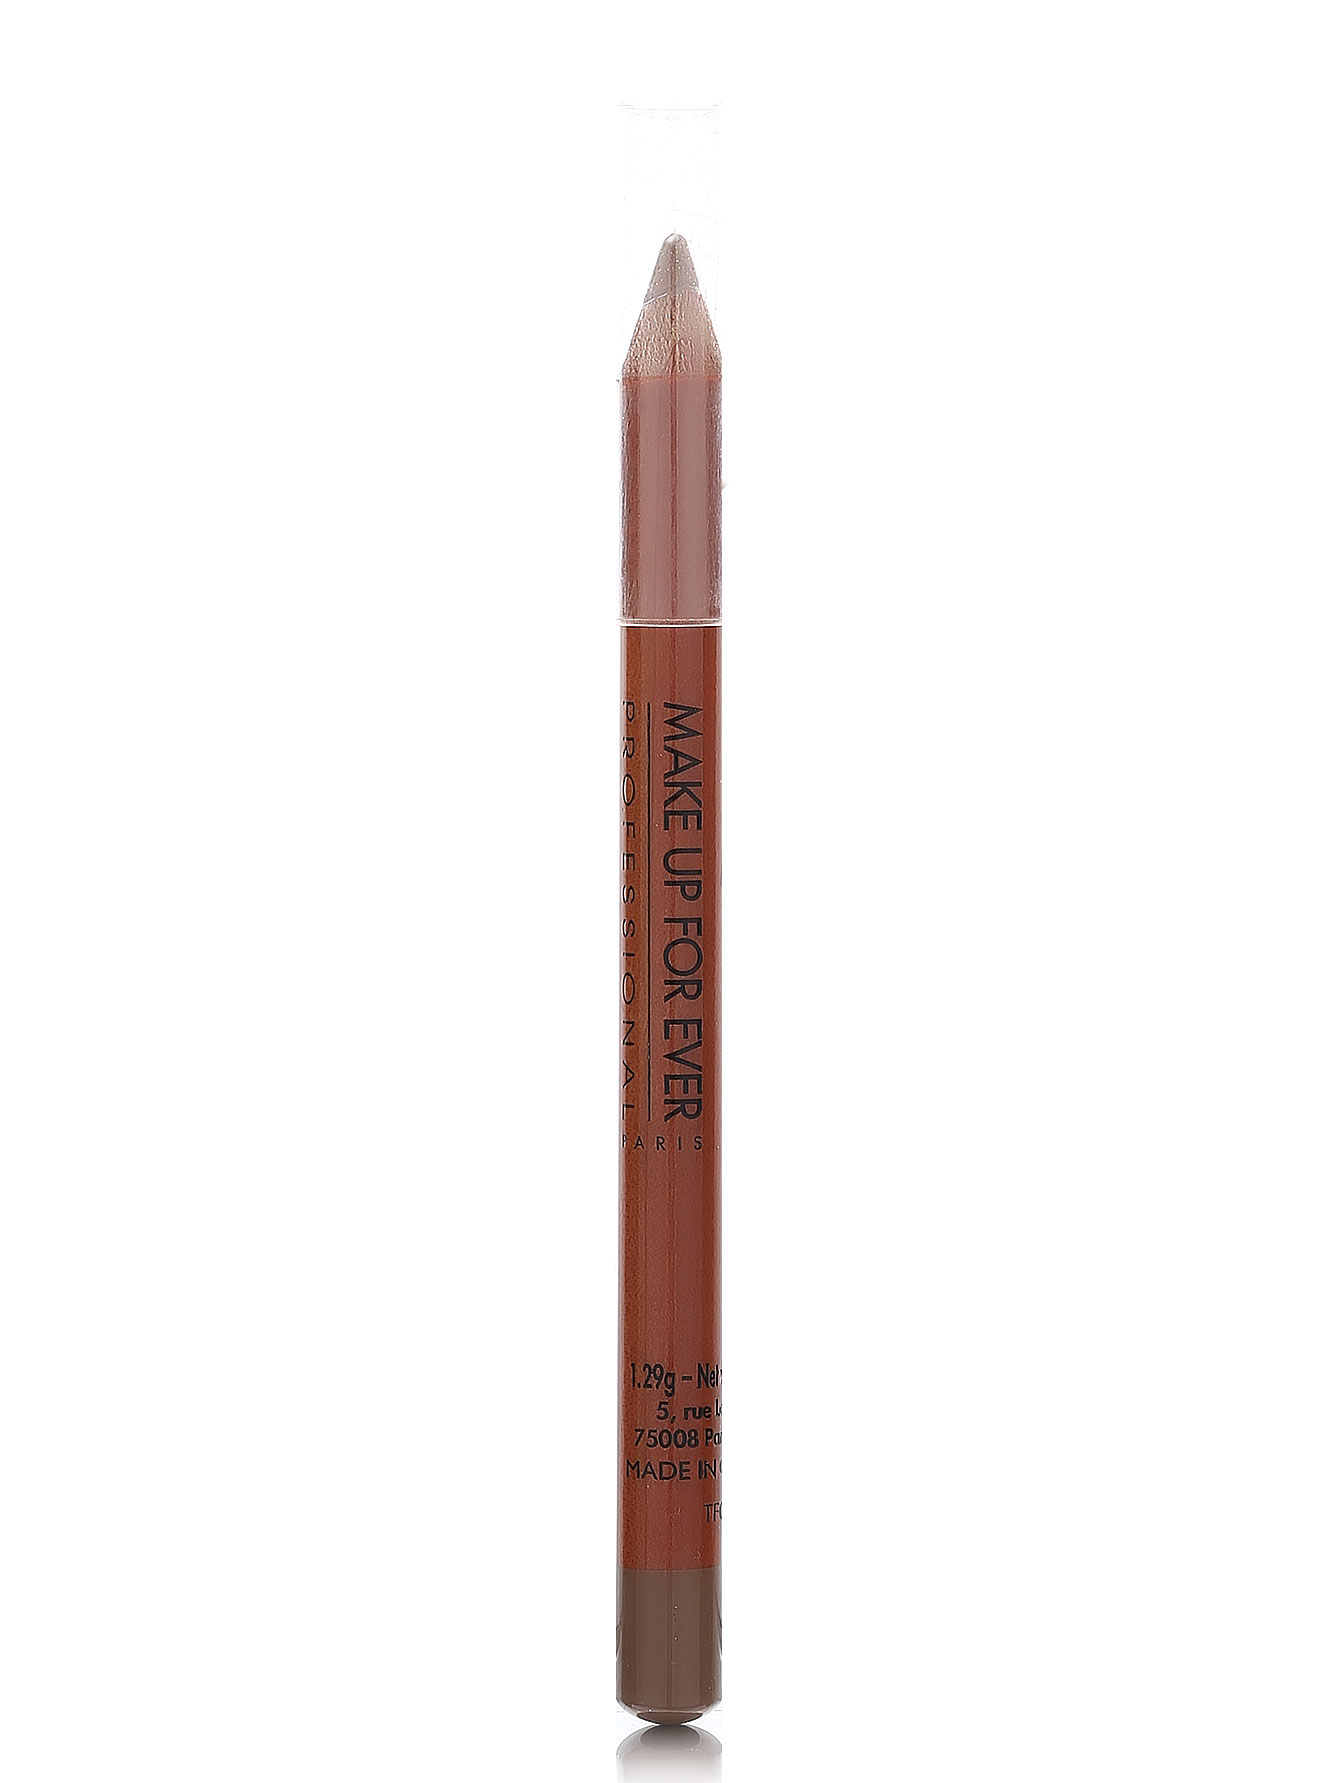  Карандаш для бровей - №1 светлый, Eyebrow Pencil - Общий вид